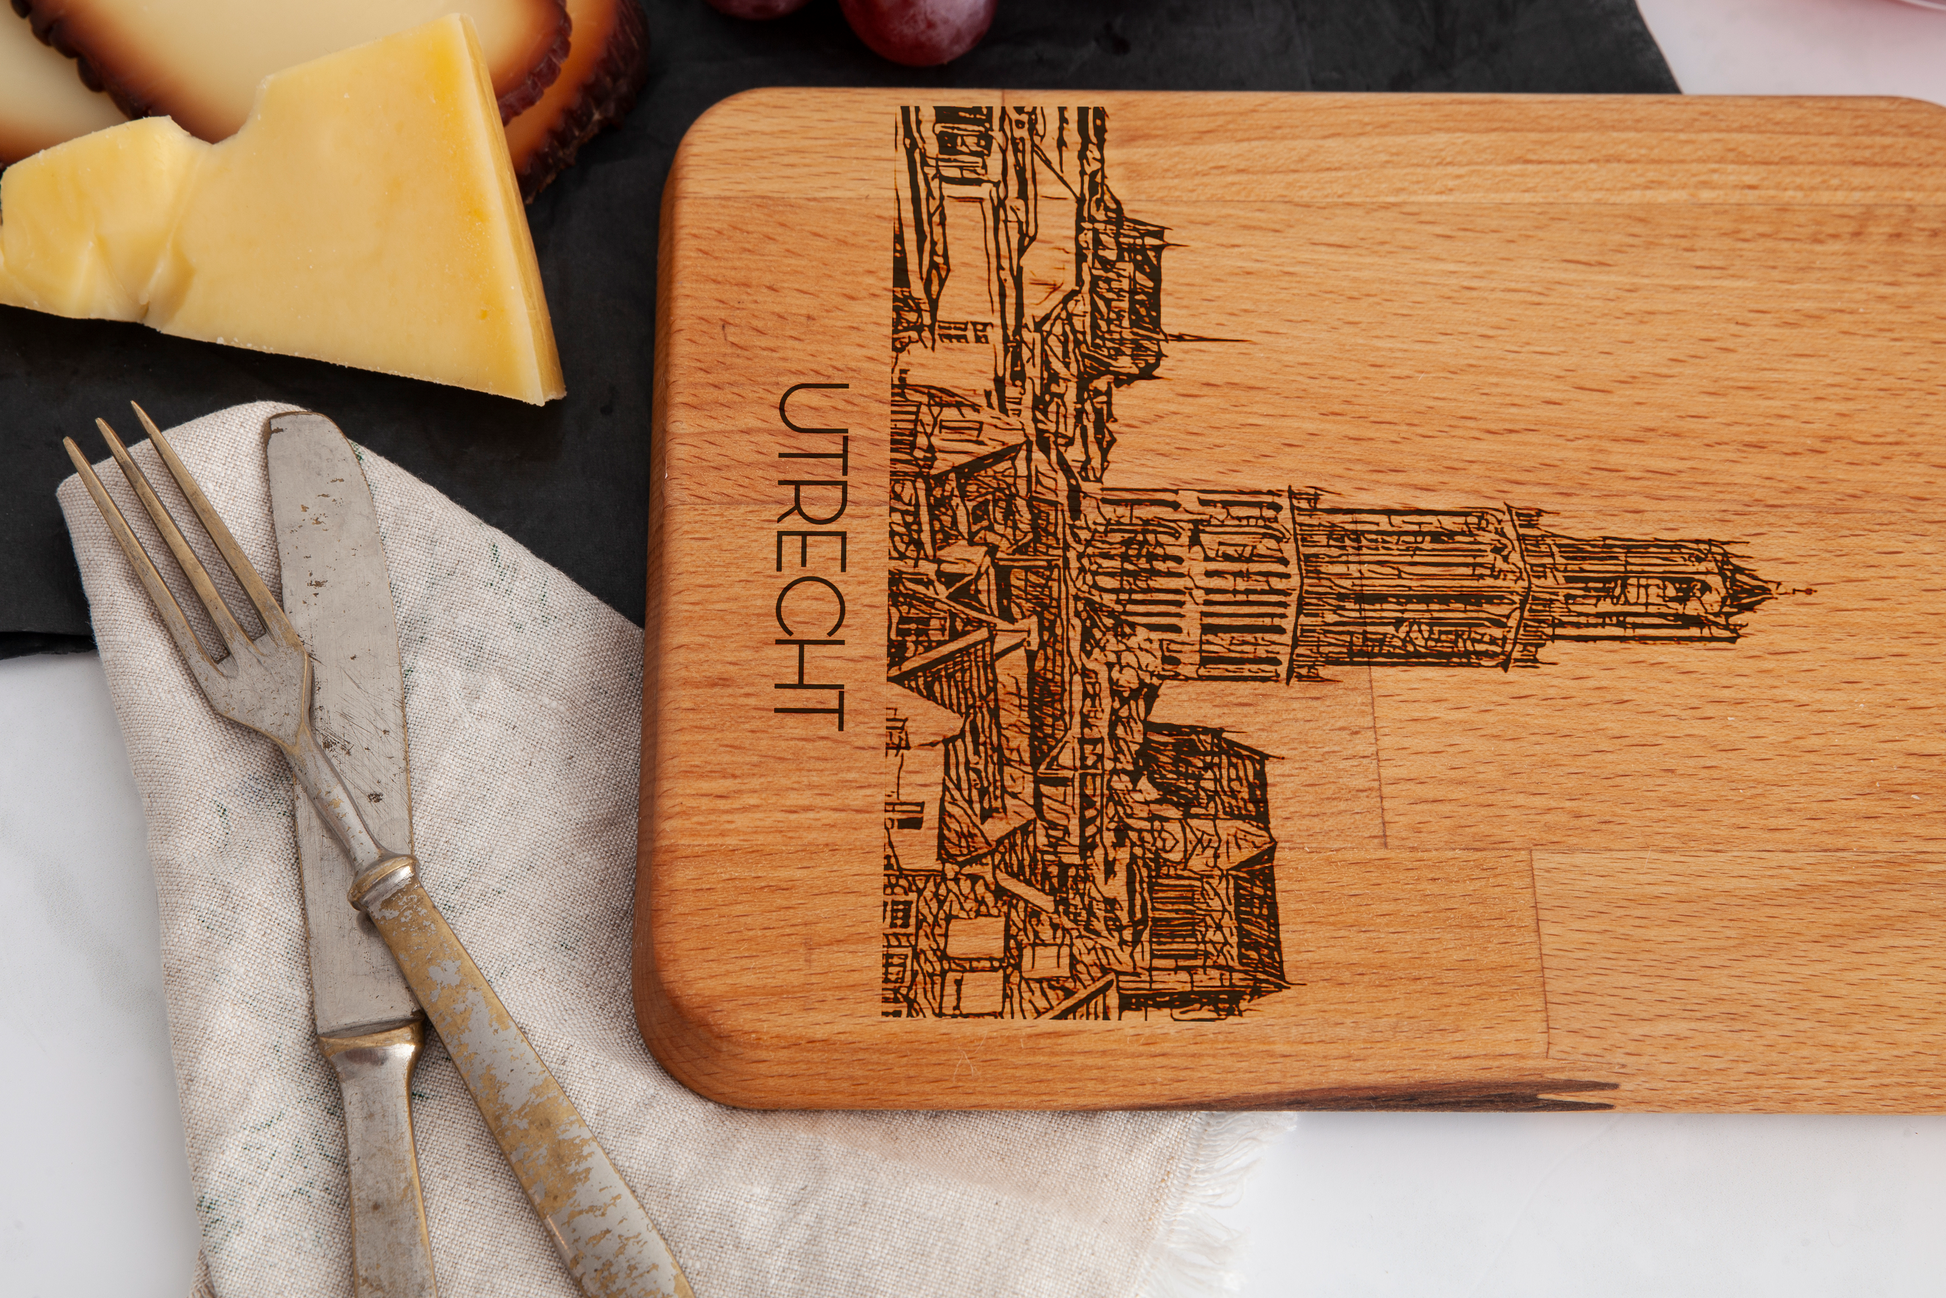 Utrecht, Domtoren, cheese board, wood grain